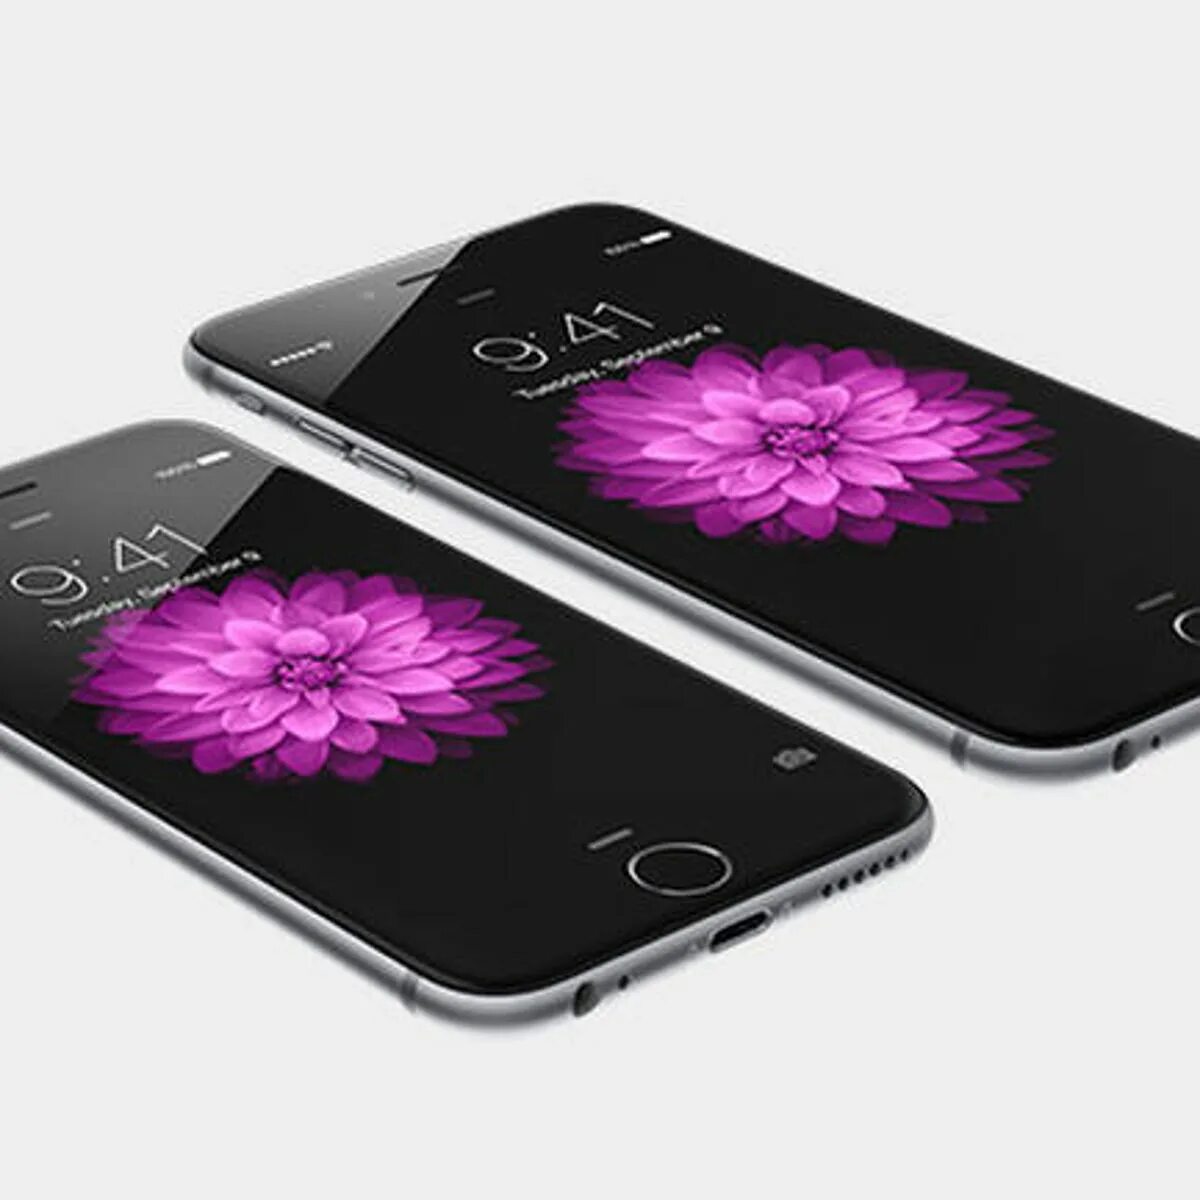 29 плюс 6. Apple iphone 6. Apple iphone 6 Plus. Iphone 6 и 6 Plus. Айфон сотка.